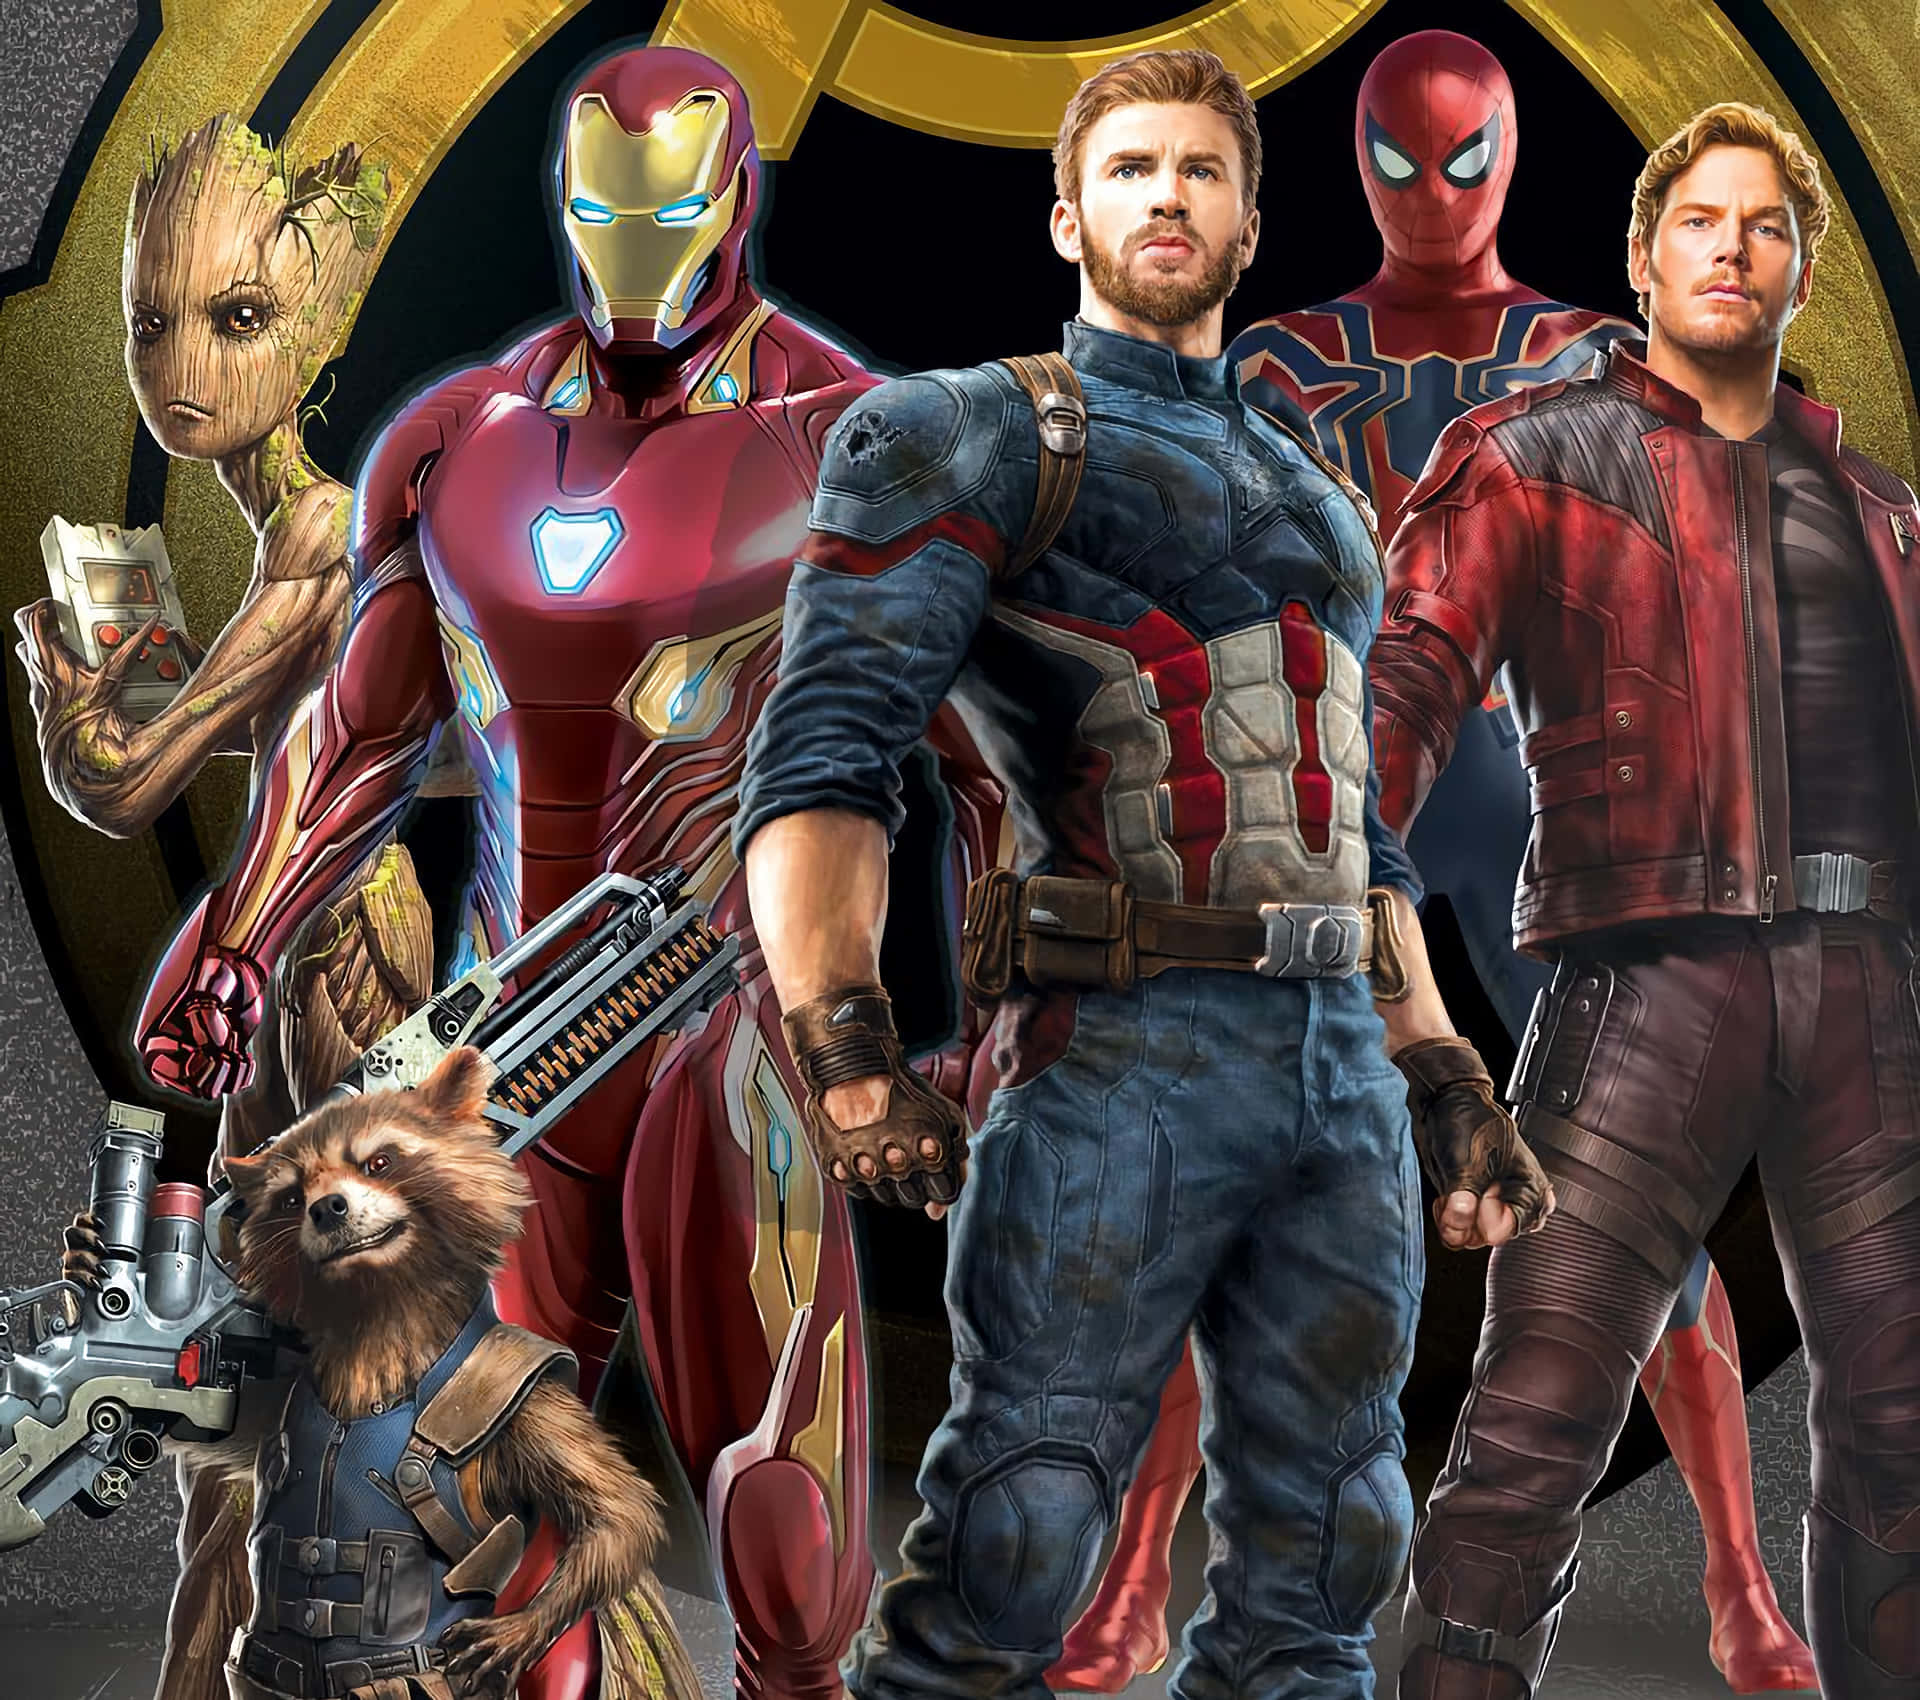 Avengersversammeln Sich Für Die Ultimative Schlacht In Marvel Studios' 